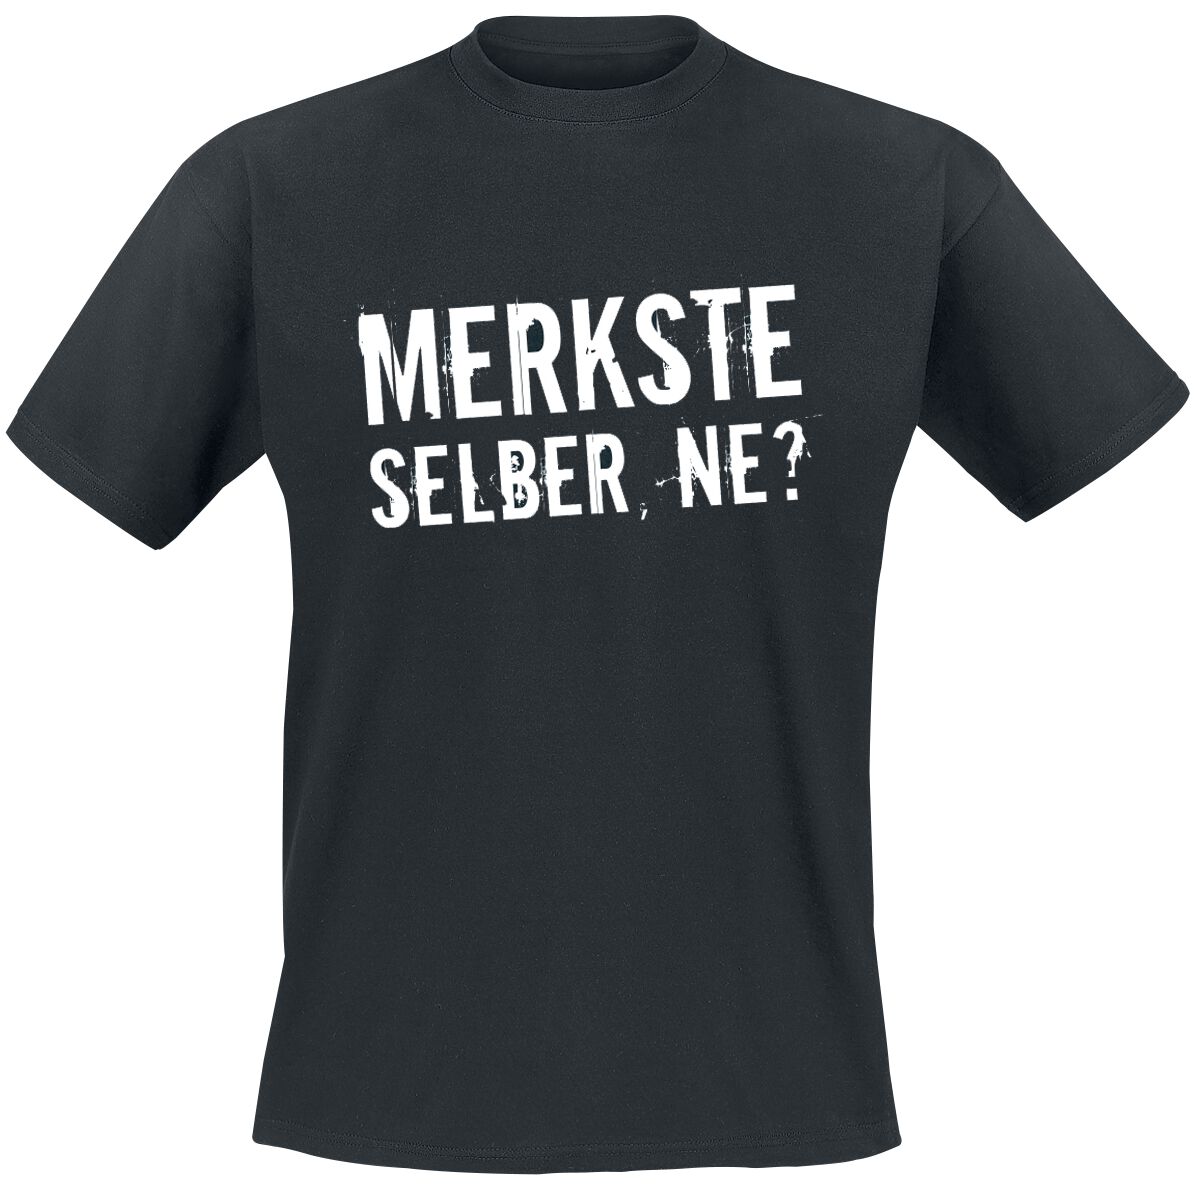 Sprüche T-Shirt - Merkste selber, ne? - XL bis 5XL - für Männer - Größe 3XL - schwarz